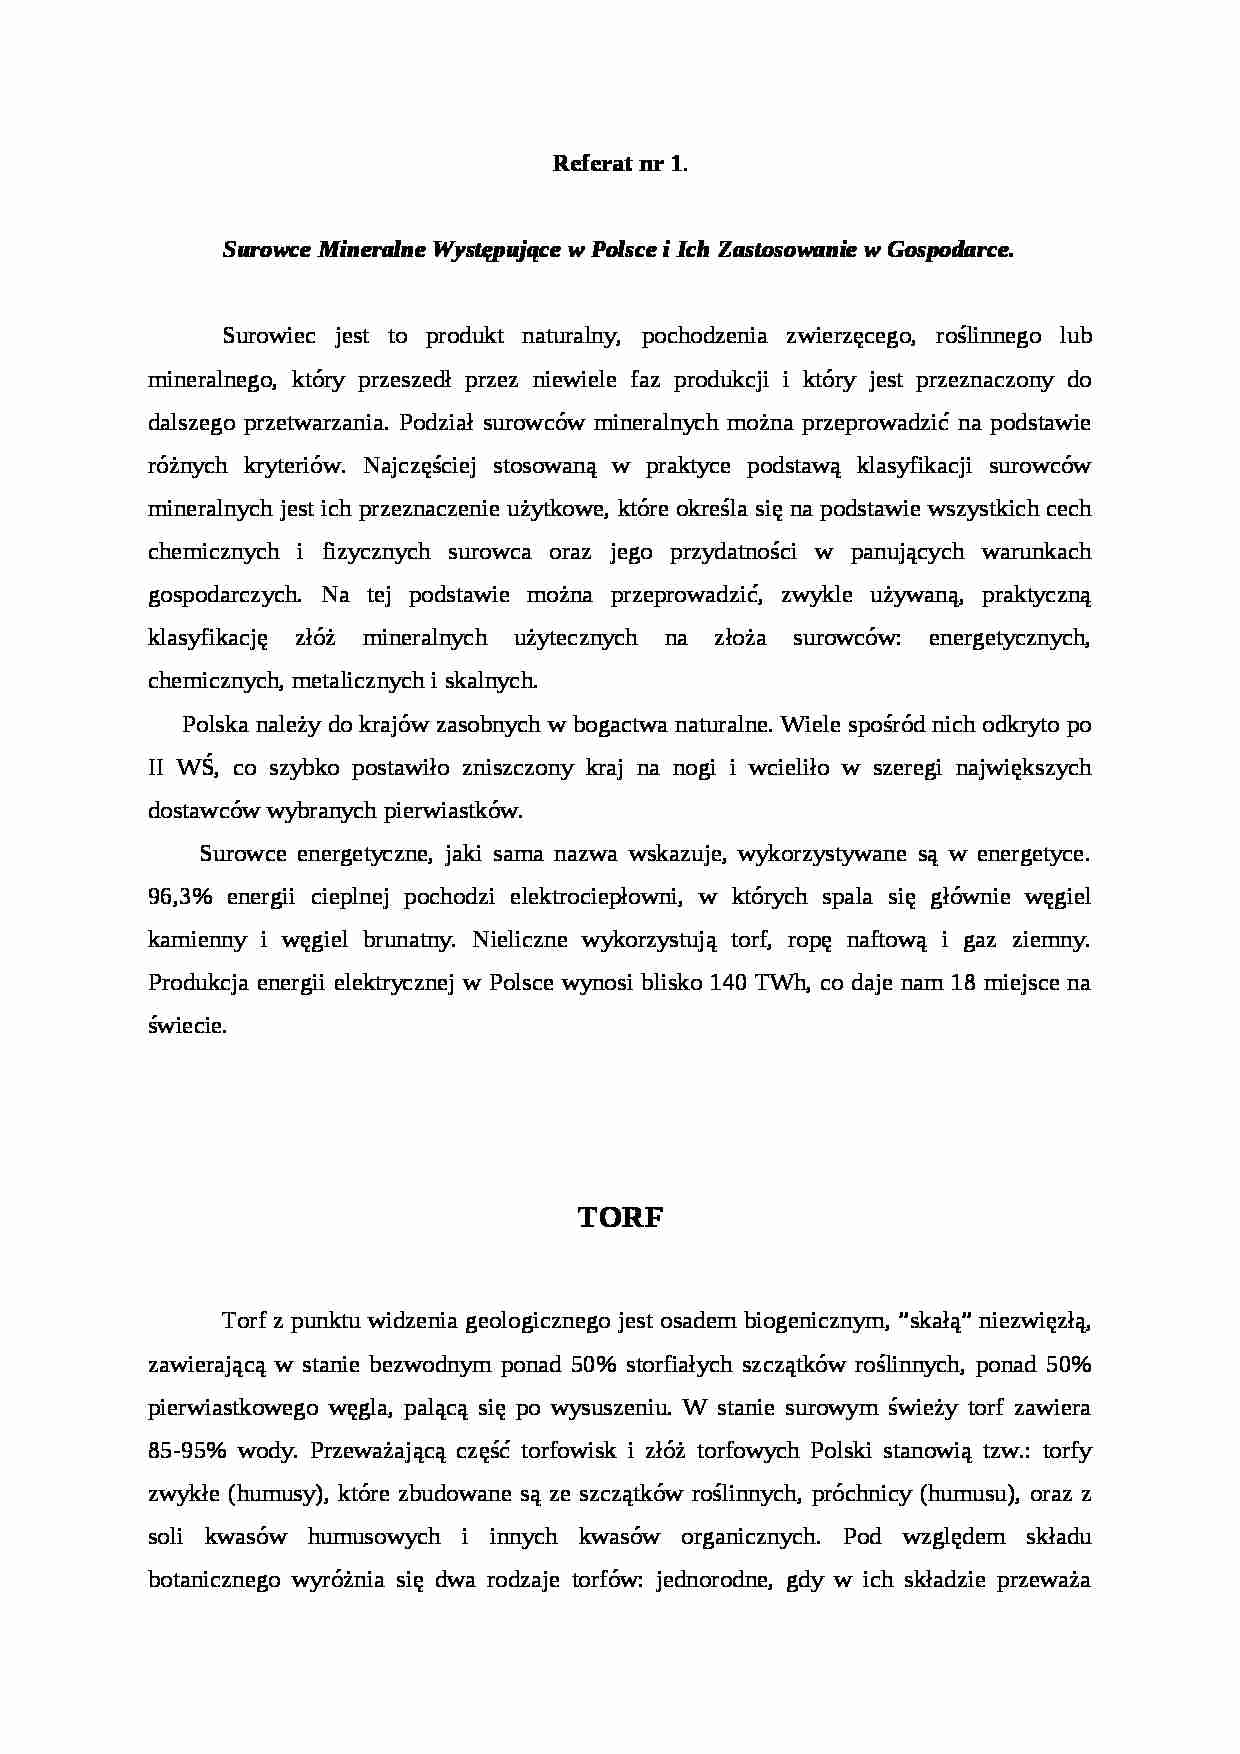 Surowce Mineralne w Polsce - omówienie - strona 1